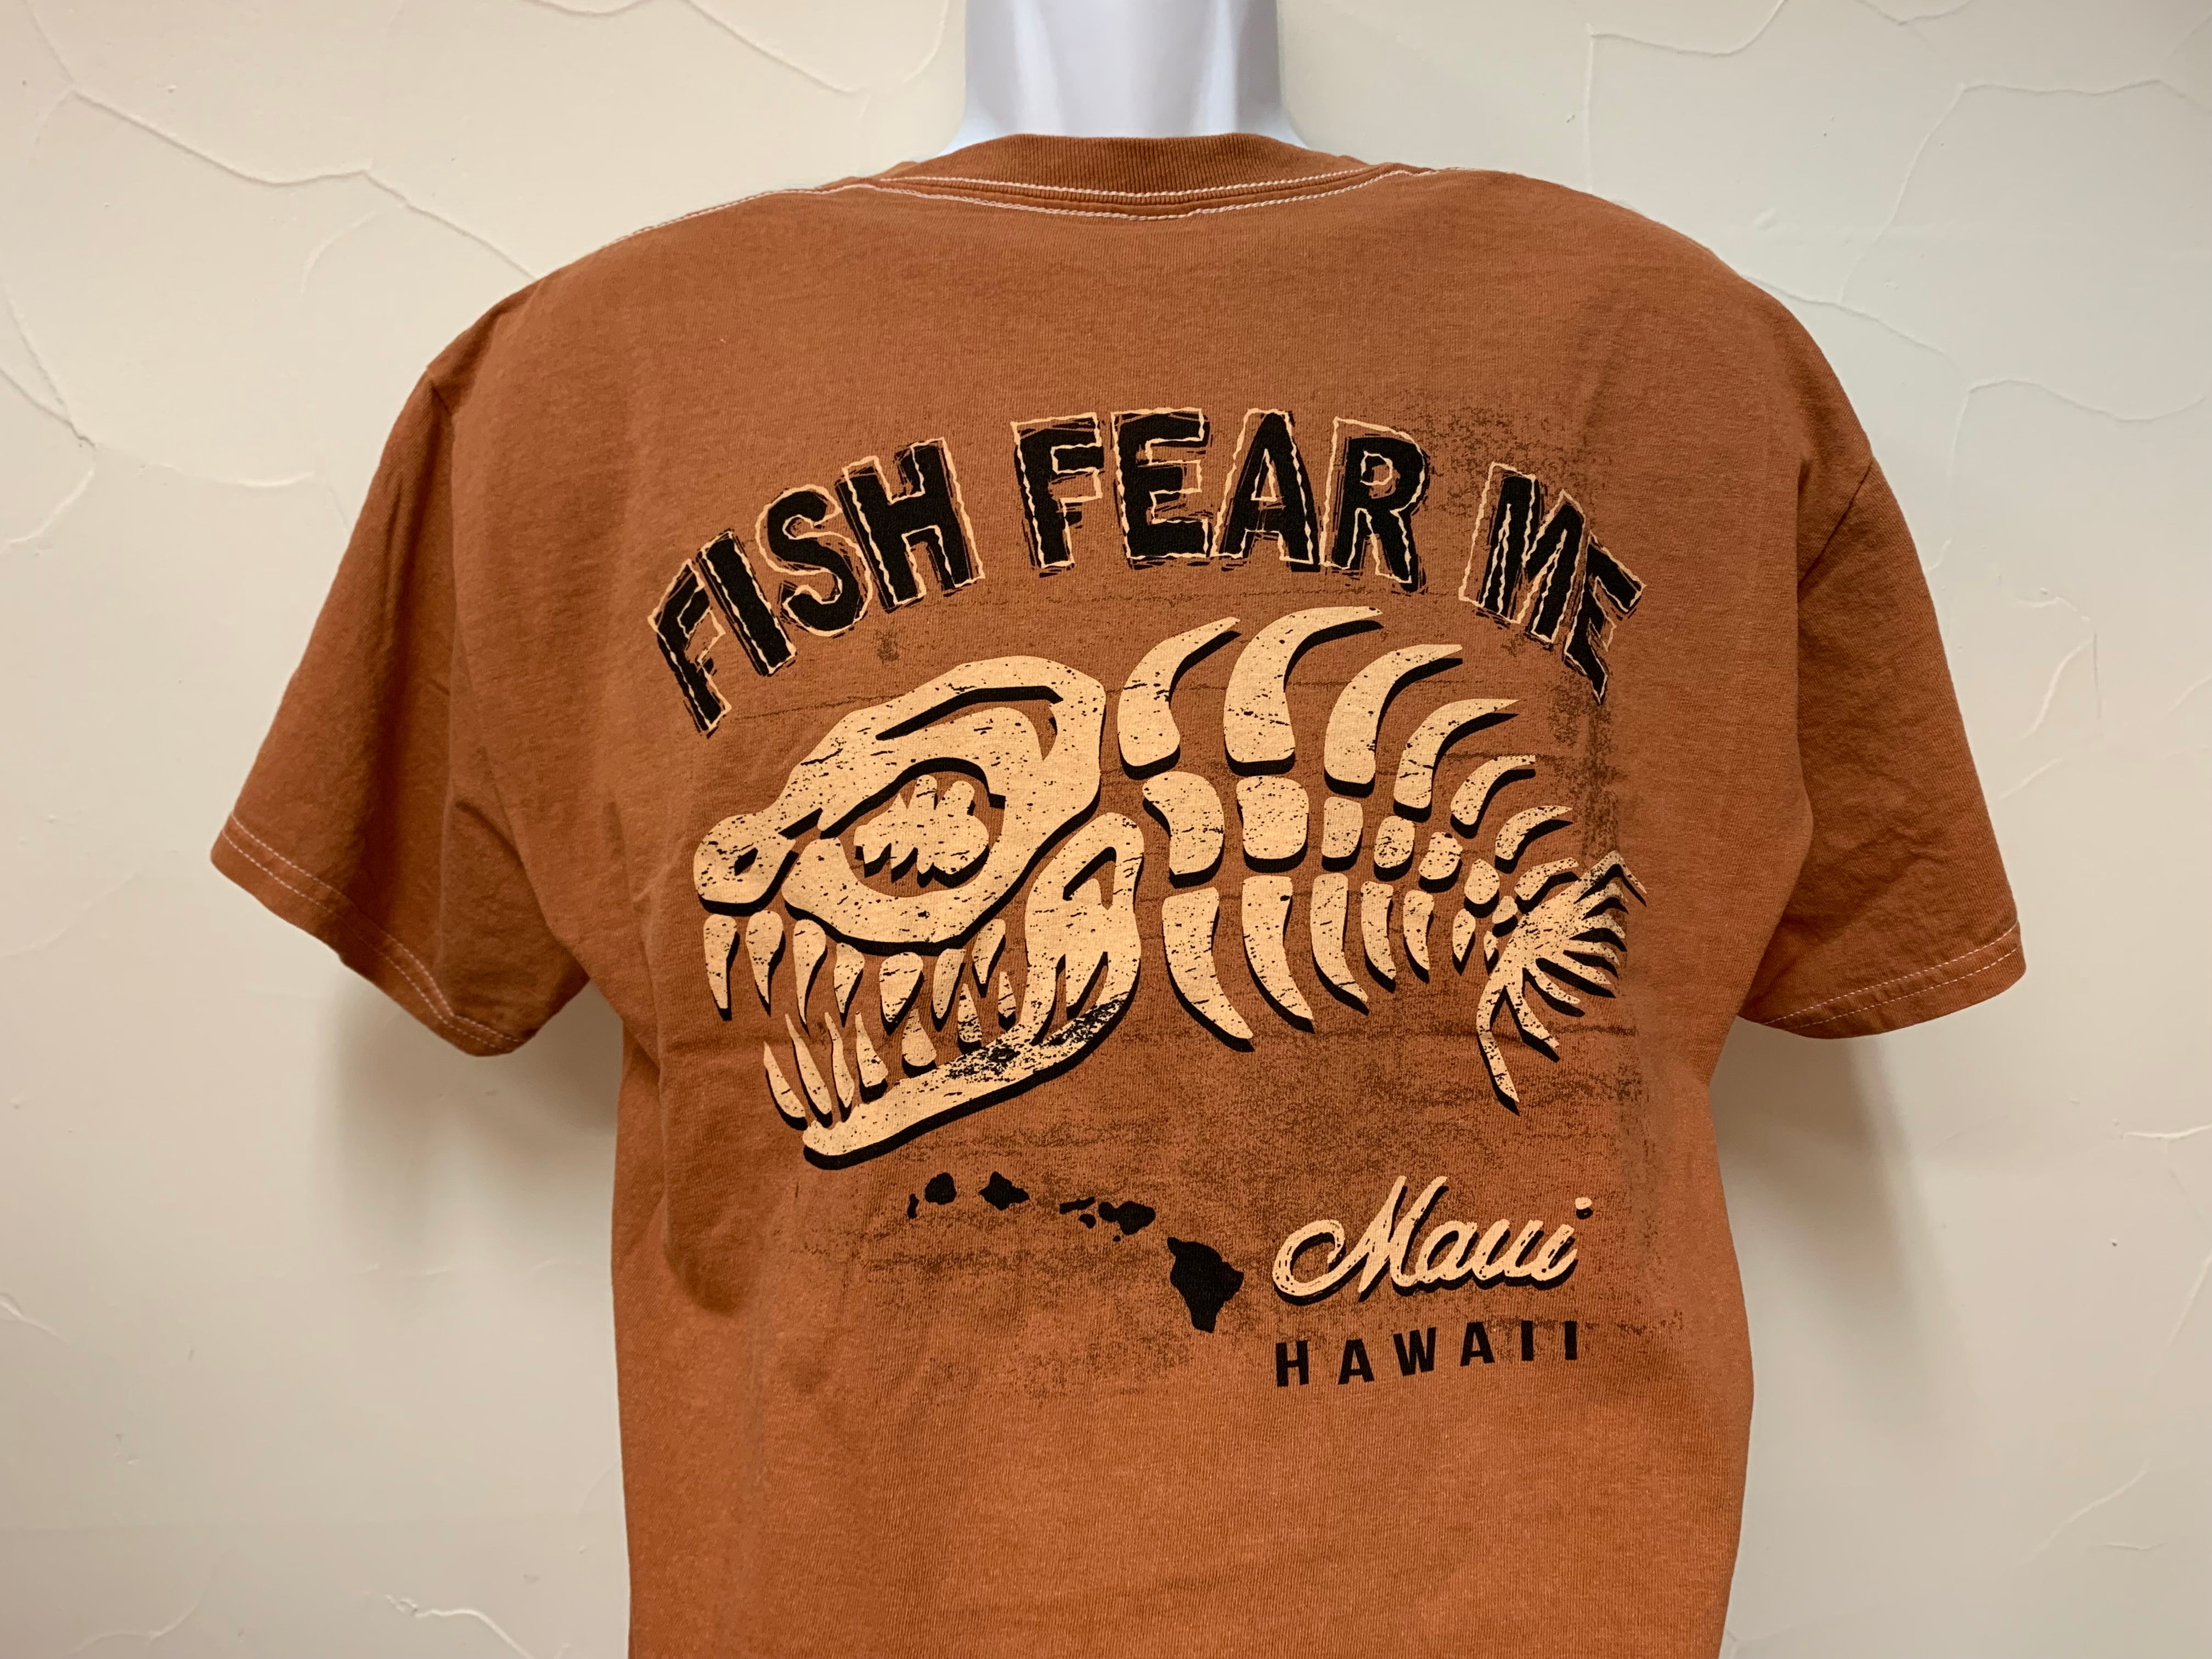 Fish Fear Me Original Dirt Shirt Medium